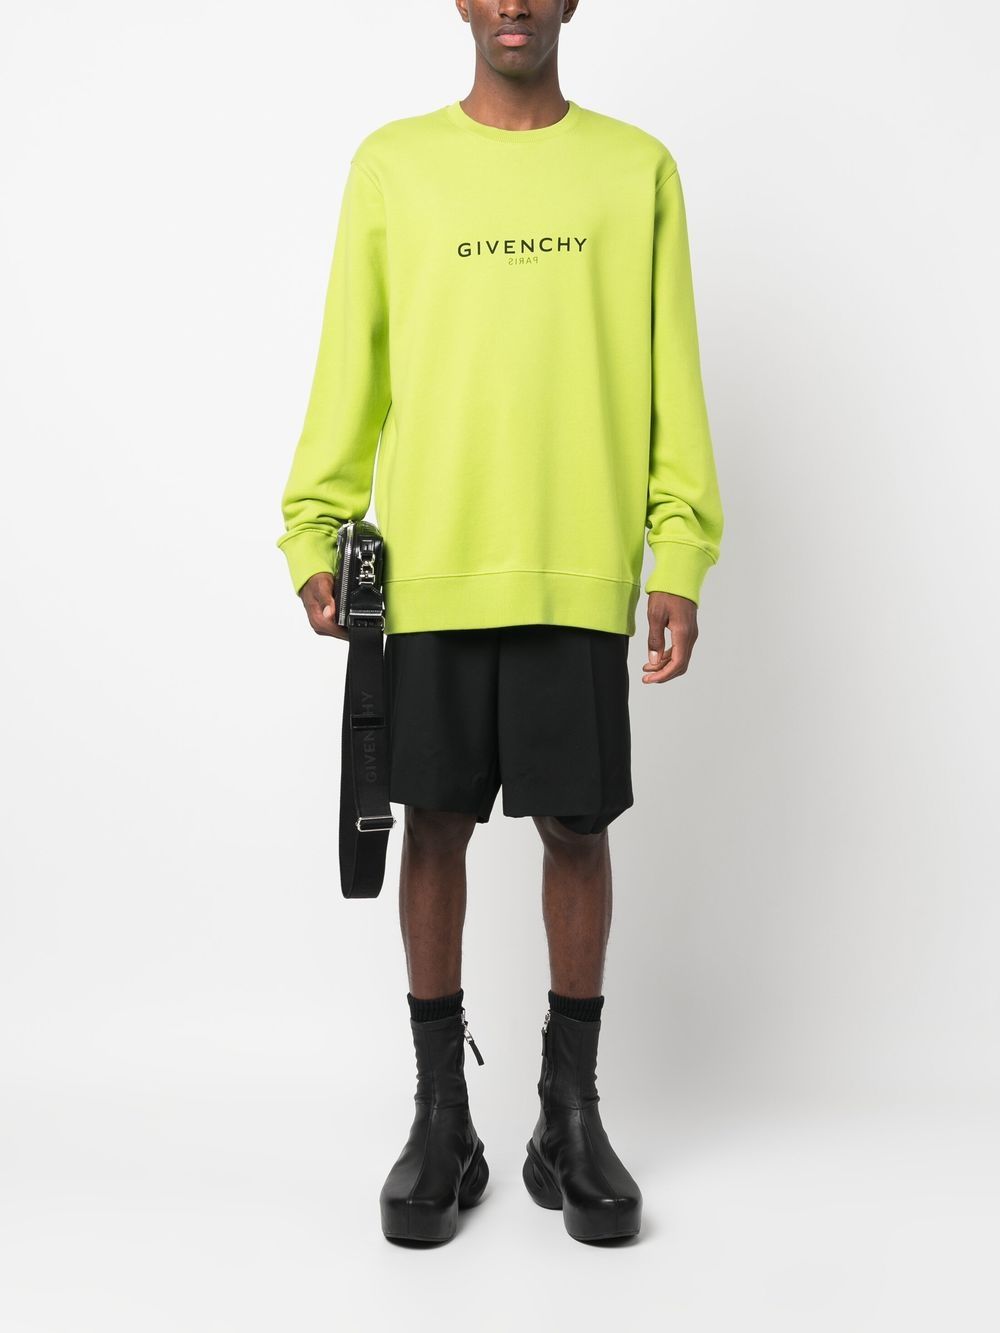 Givenchy Crew Neck Sweatshirt - Loschi Boutique